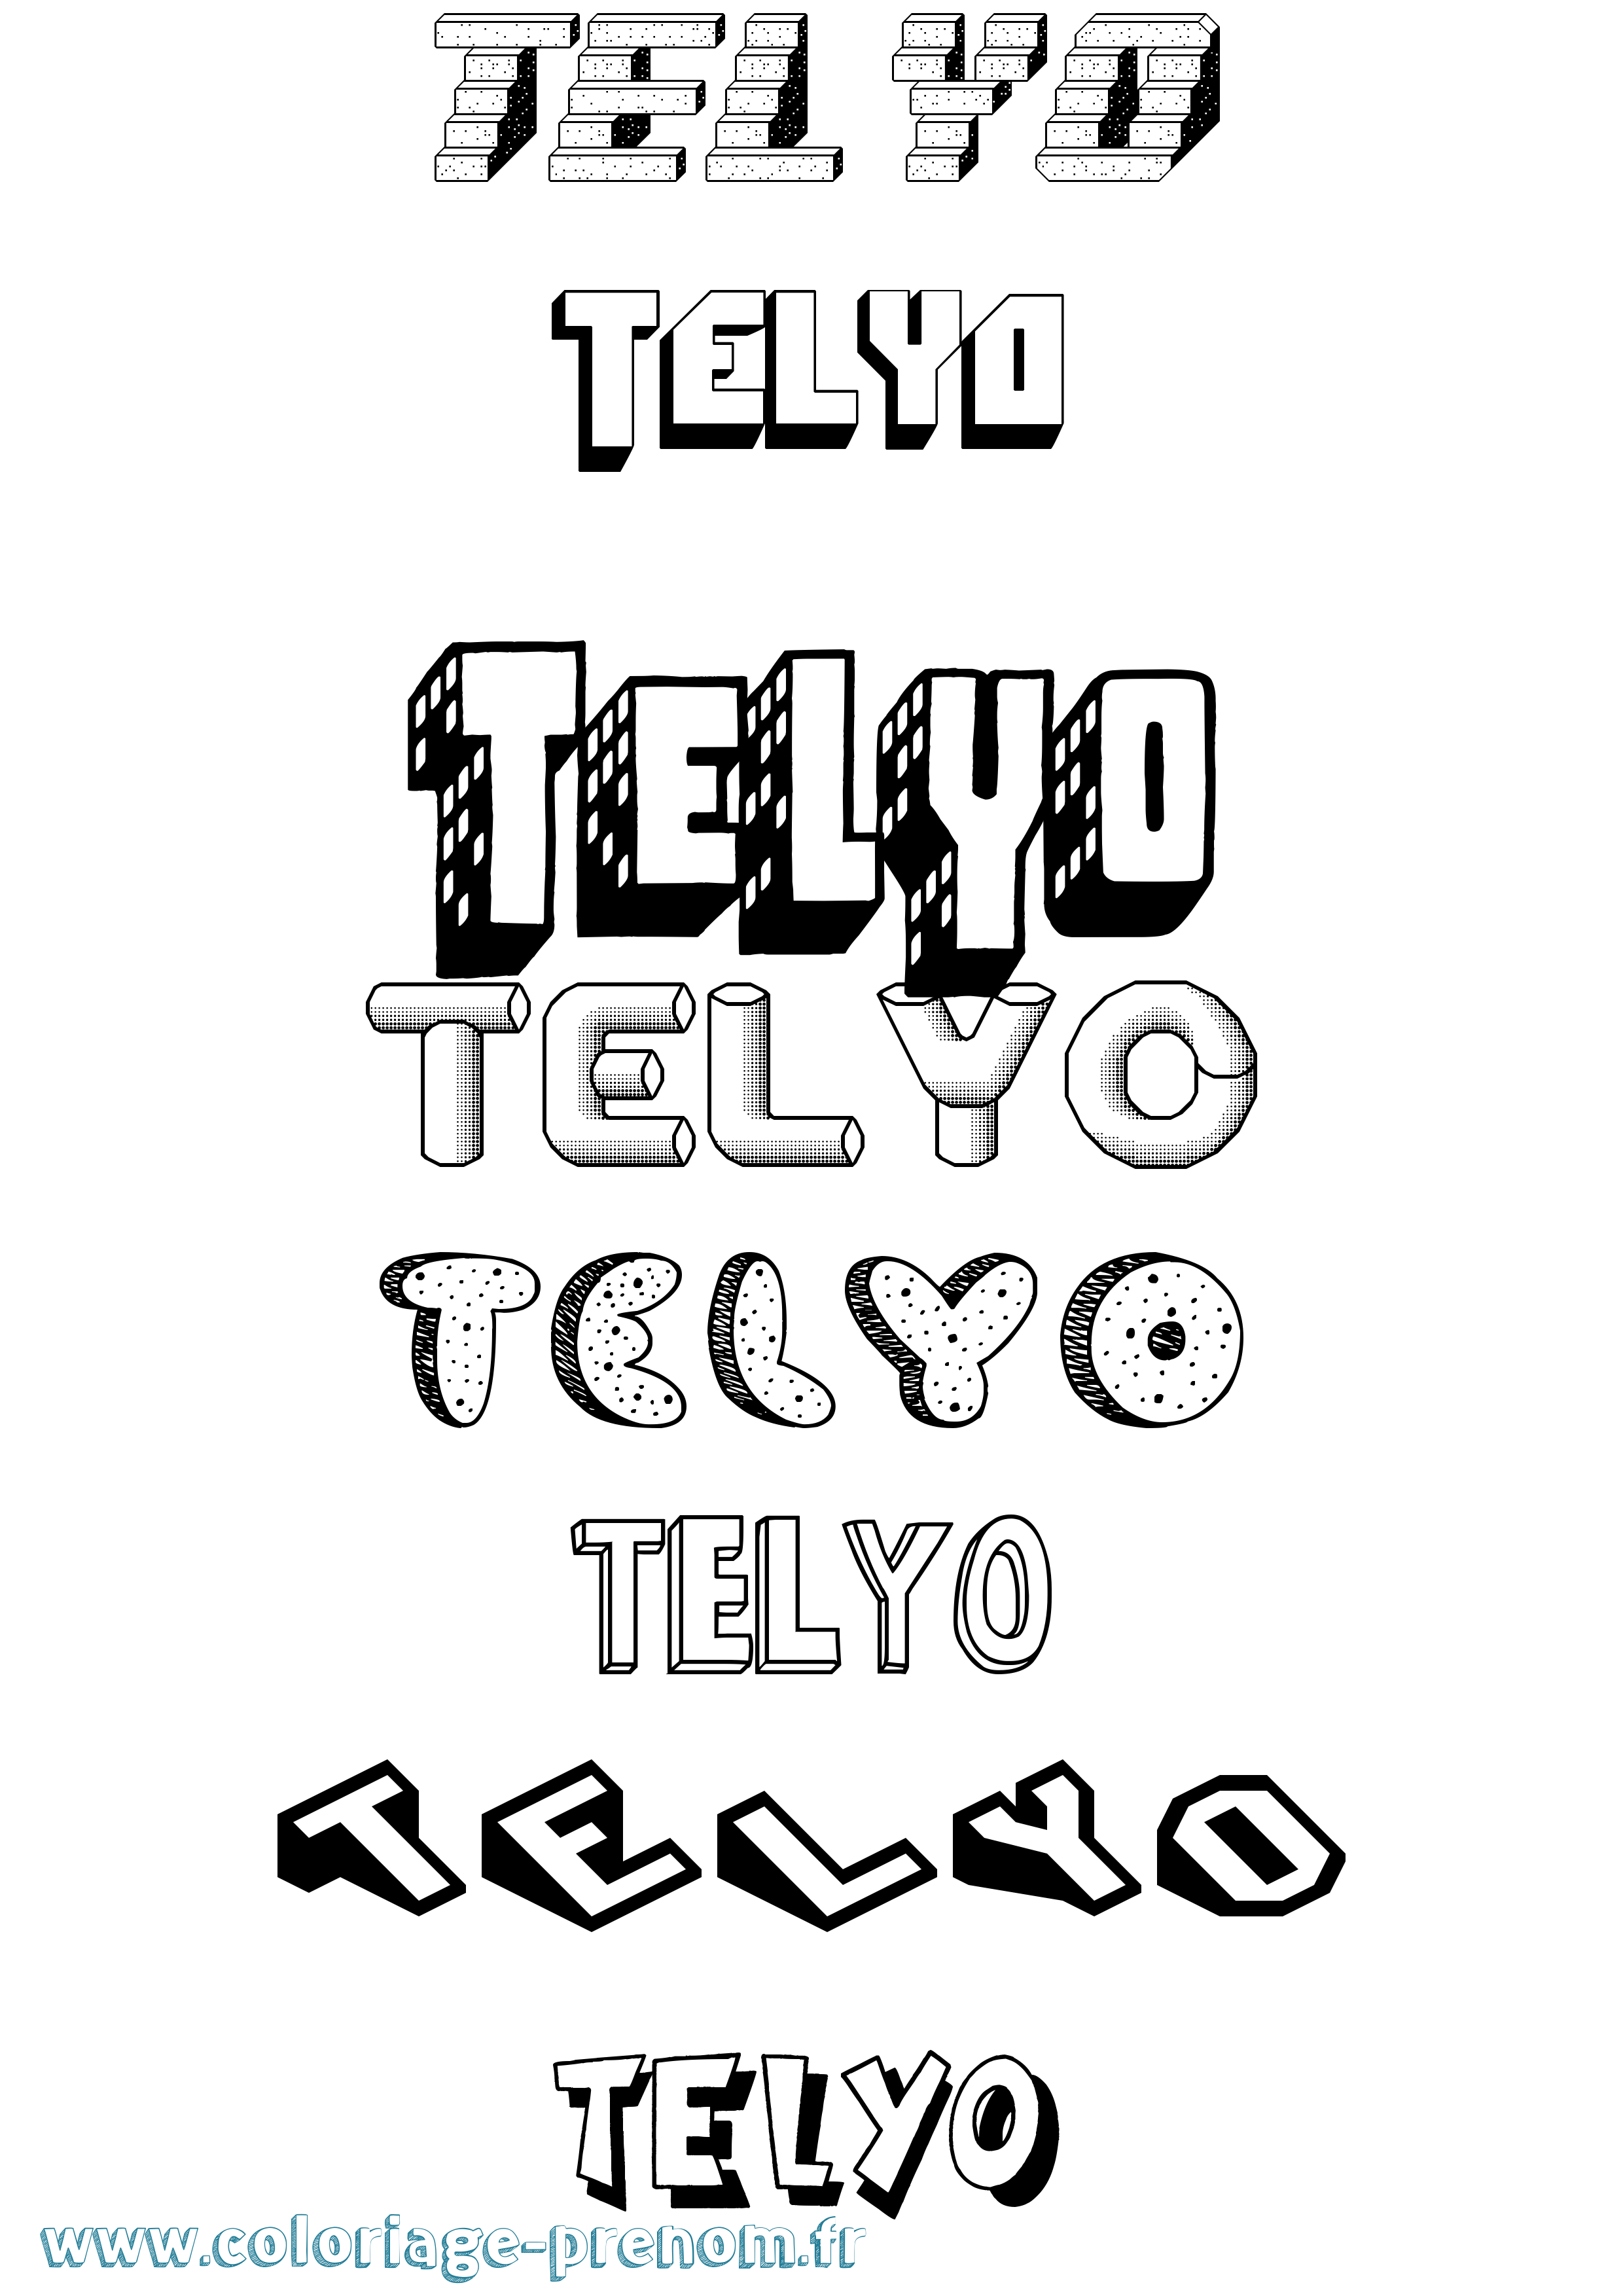 Coloriage prénom Telyo Effet 3D